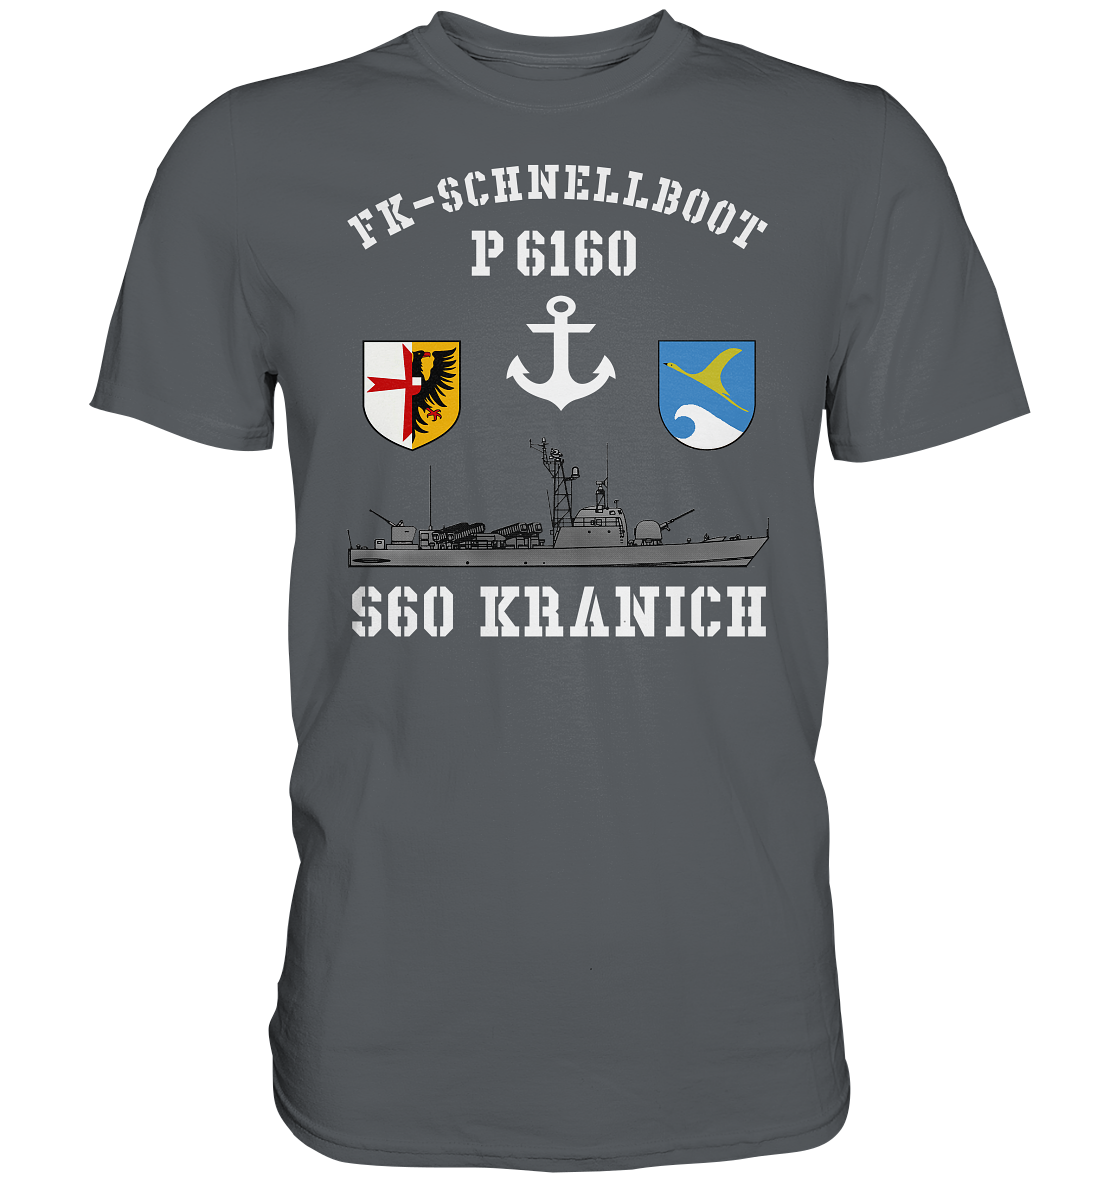 FK-Schnellboot P6160 S60 KRANICH Bofors - Premium Shirt